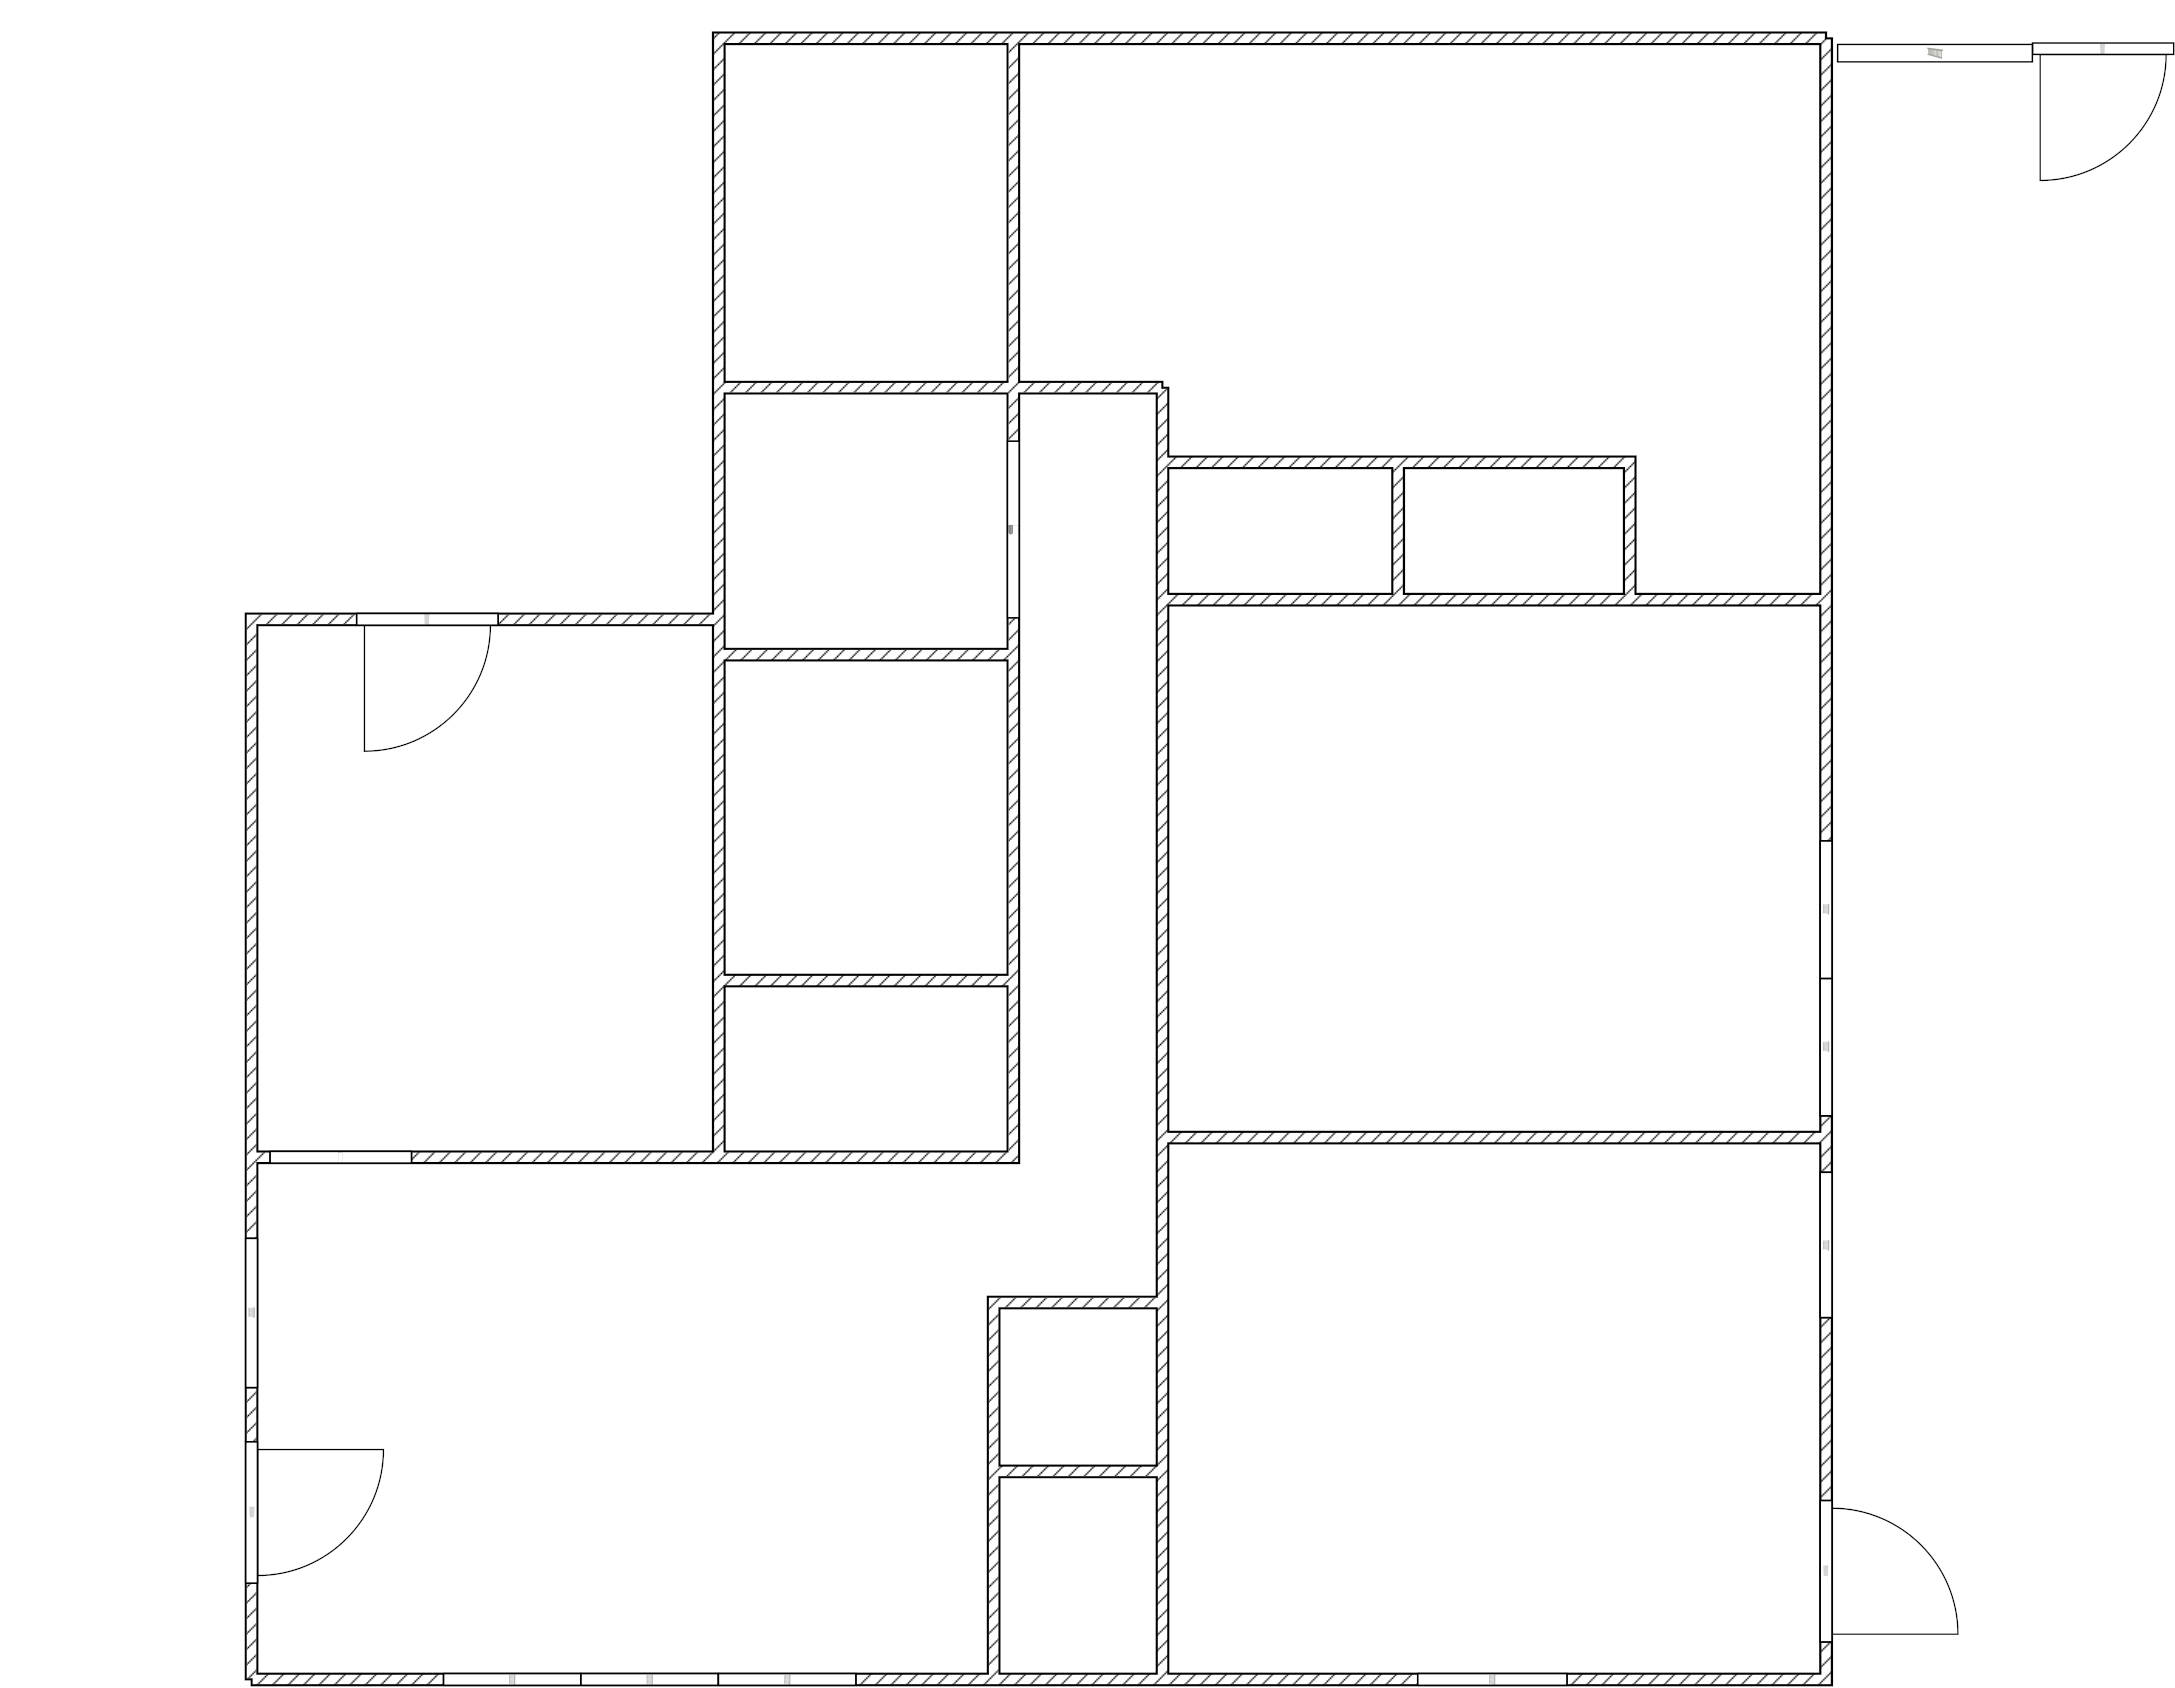 example_floorplan.png